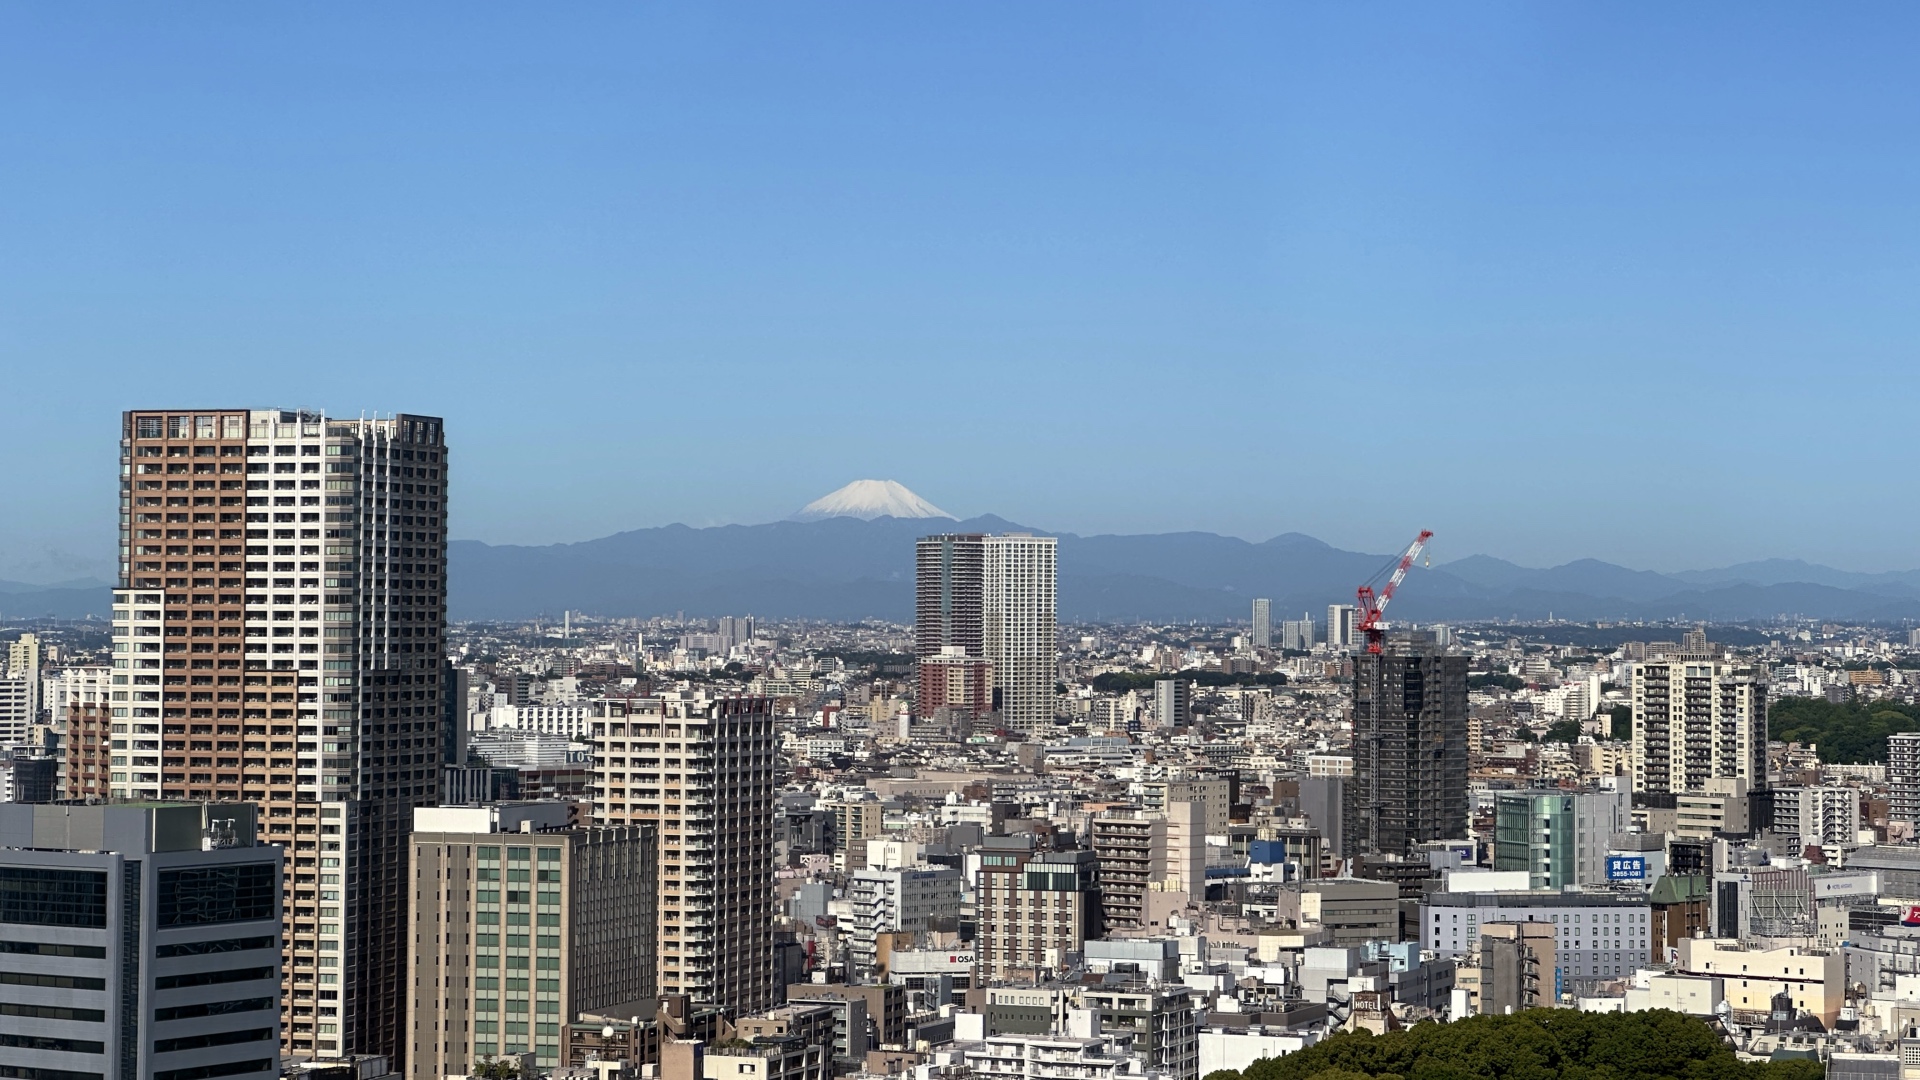 Tokio und der Fuji im Hintergrund.